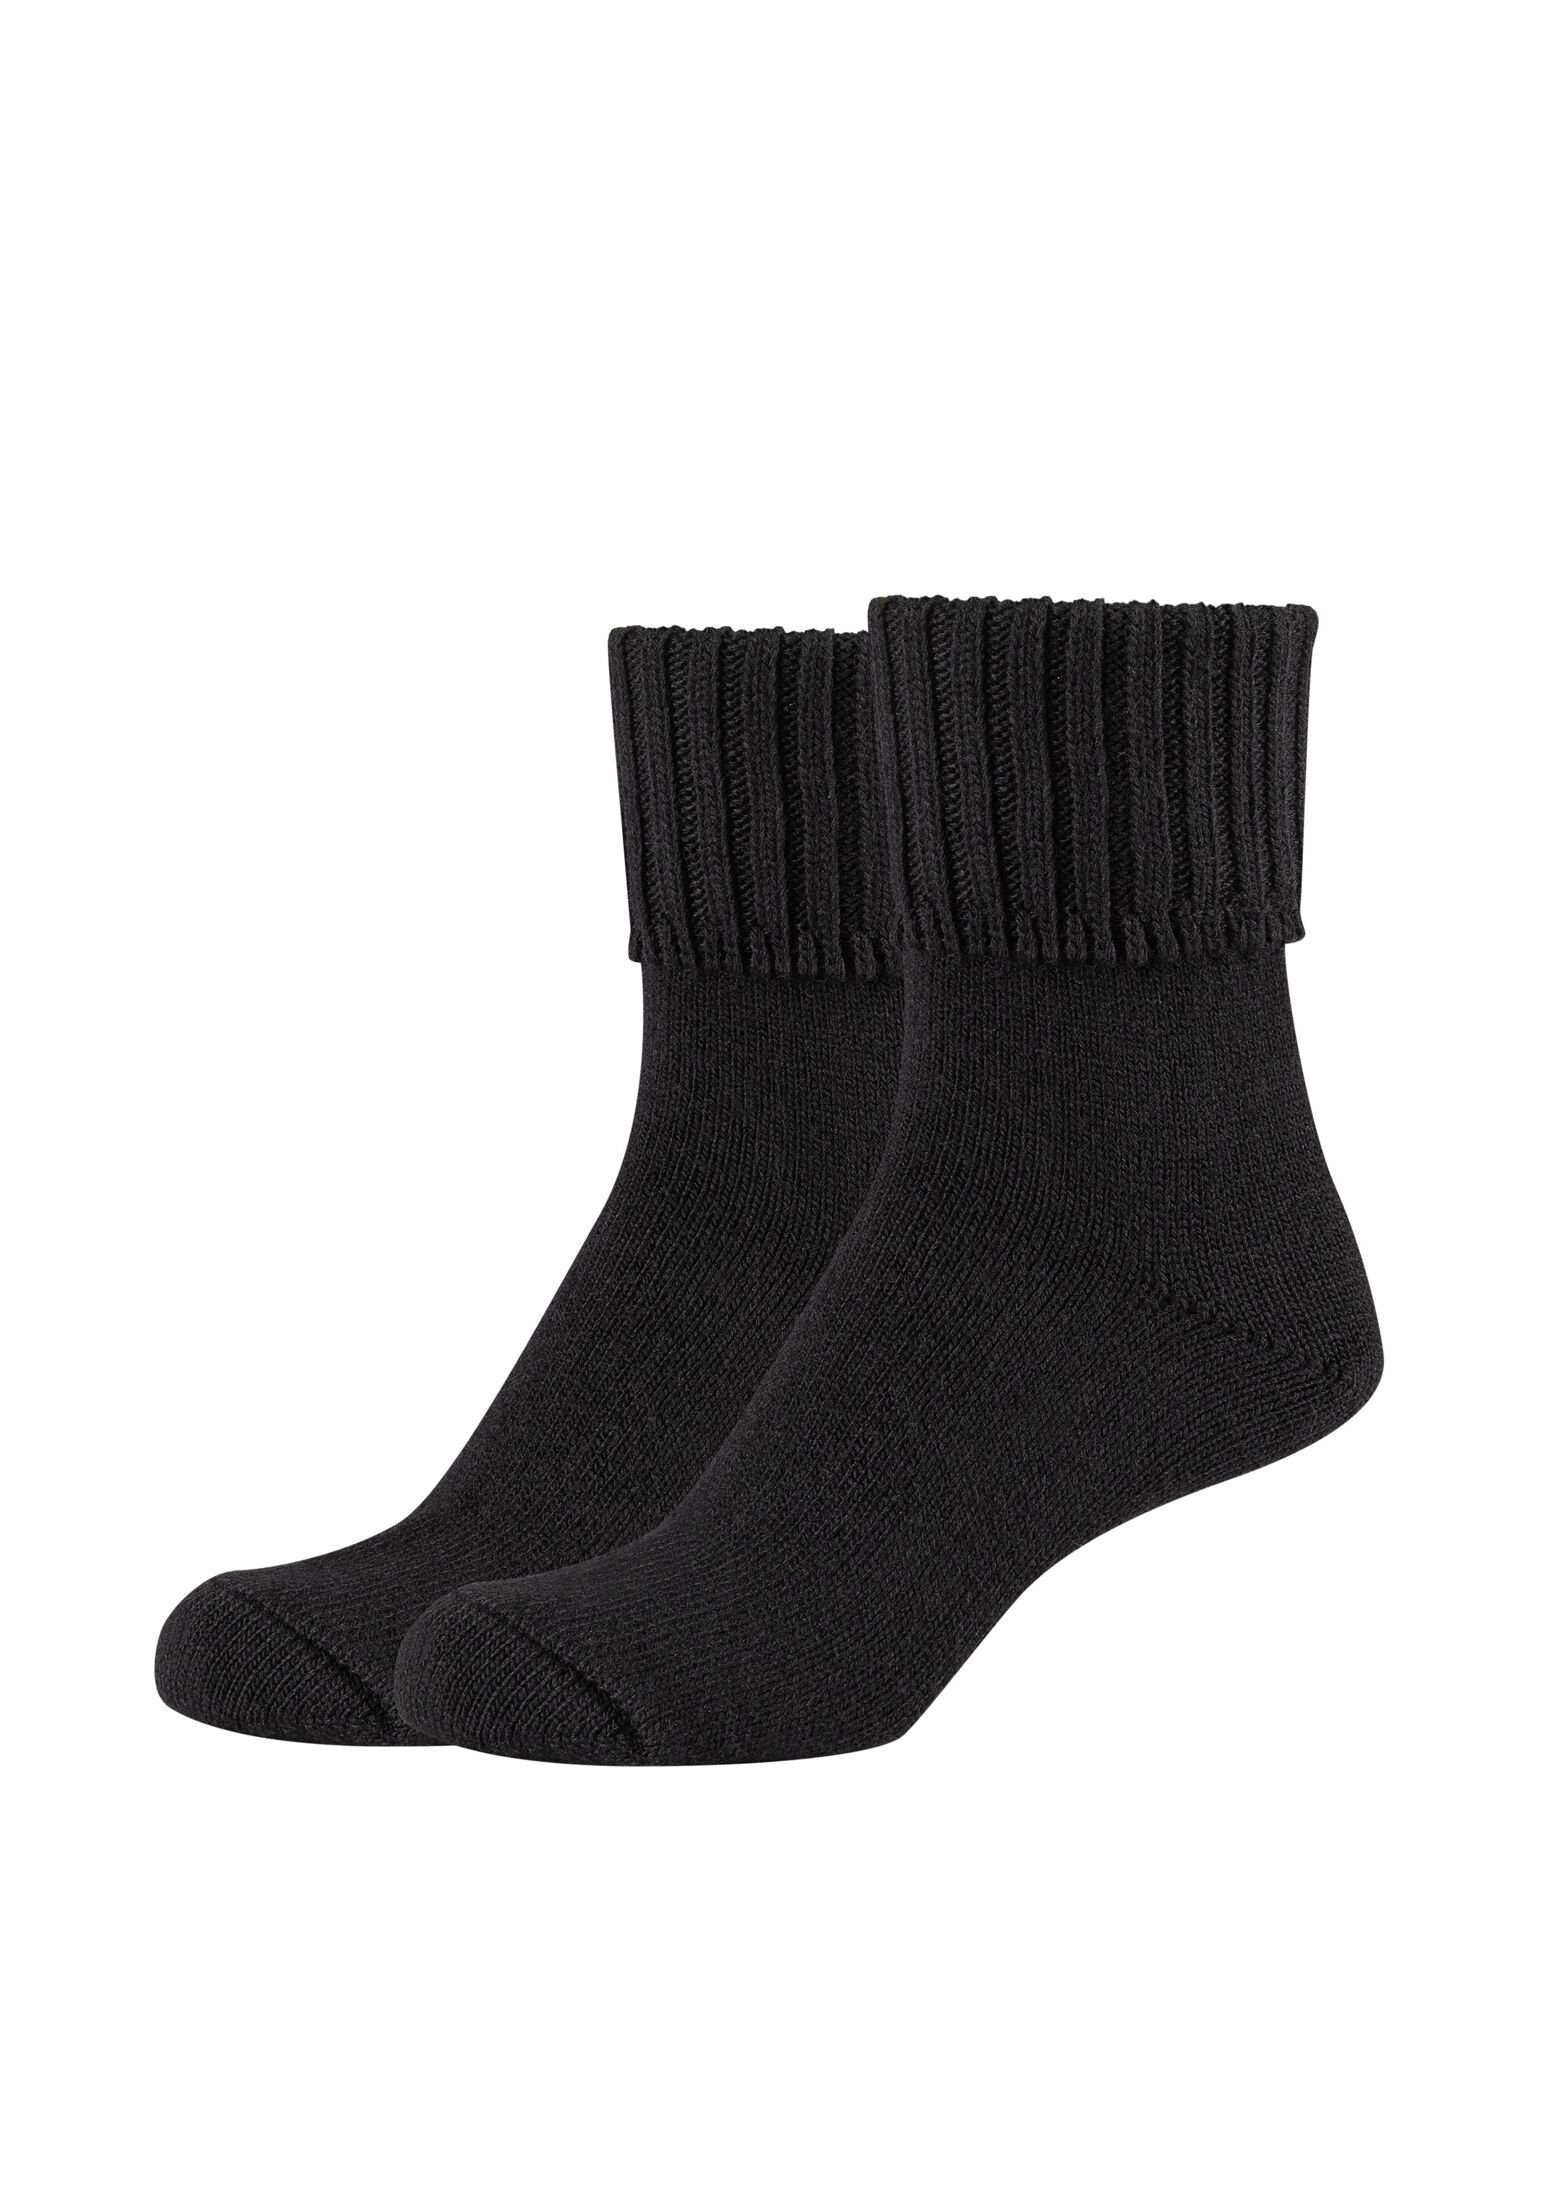 Camano Socken Socken 2er Pack black